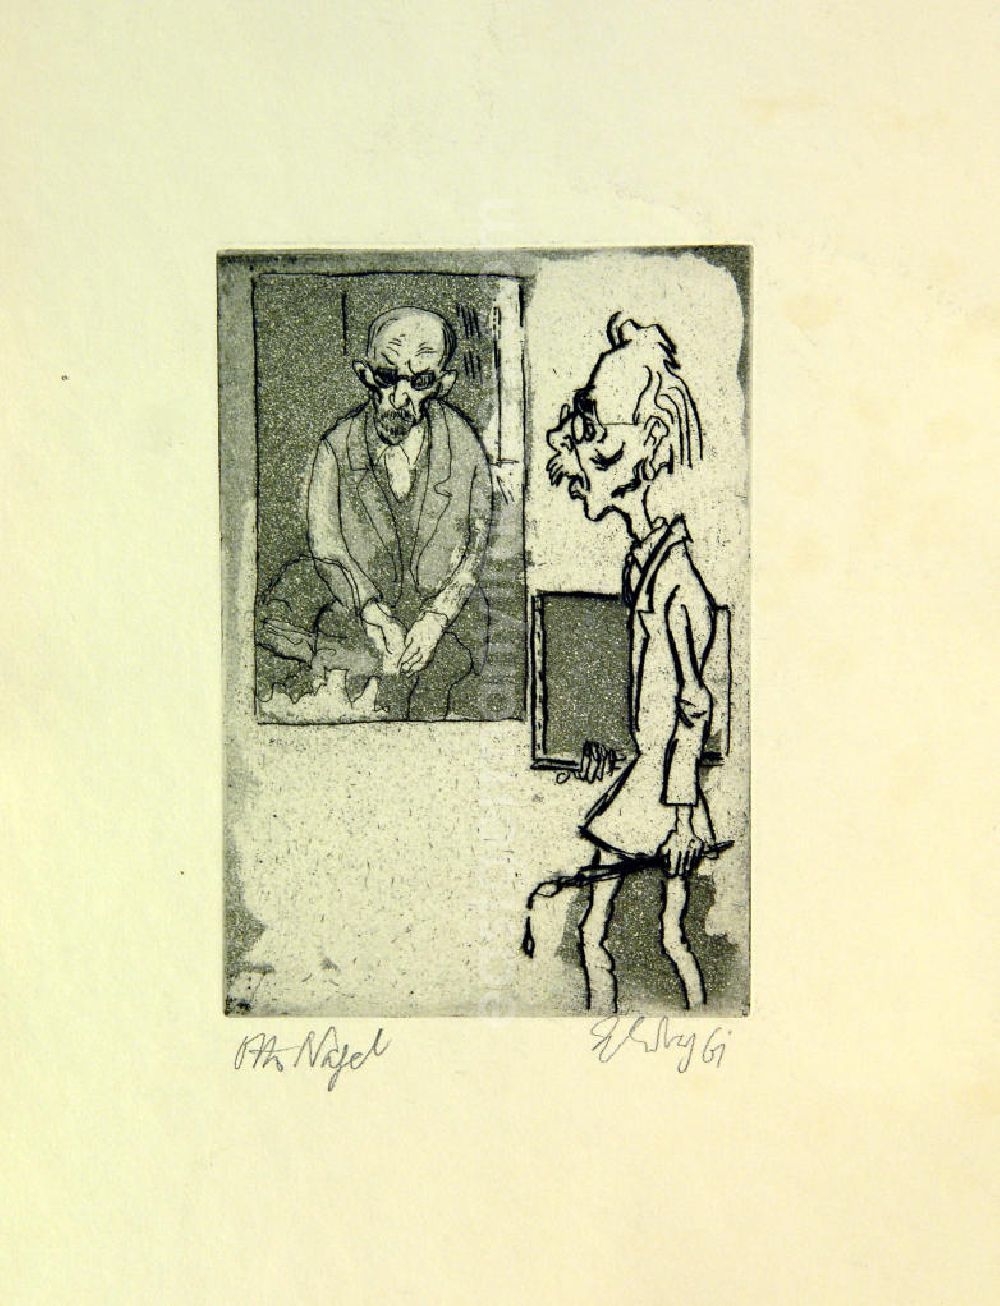 GDR picture archive: Berlin - Grafik von Herbert Sandberg über Otto Nagel (*27.09.1894 †12.07.1967) Otto Nagel aus dem Jahr 1961, 16,5x11,5cm Aquatinta, handsigniert, 28/5